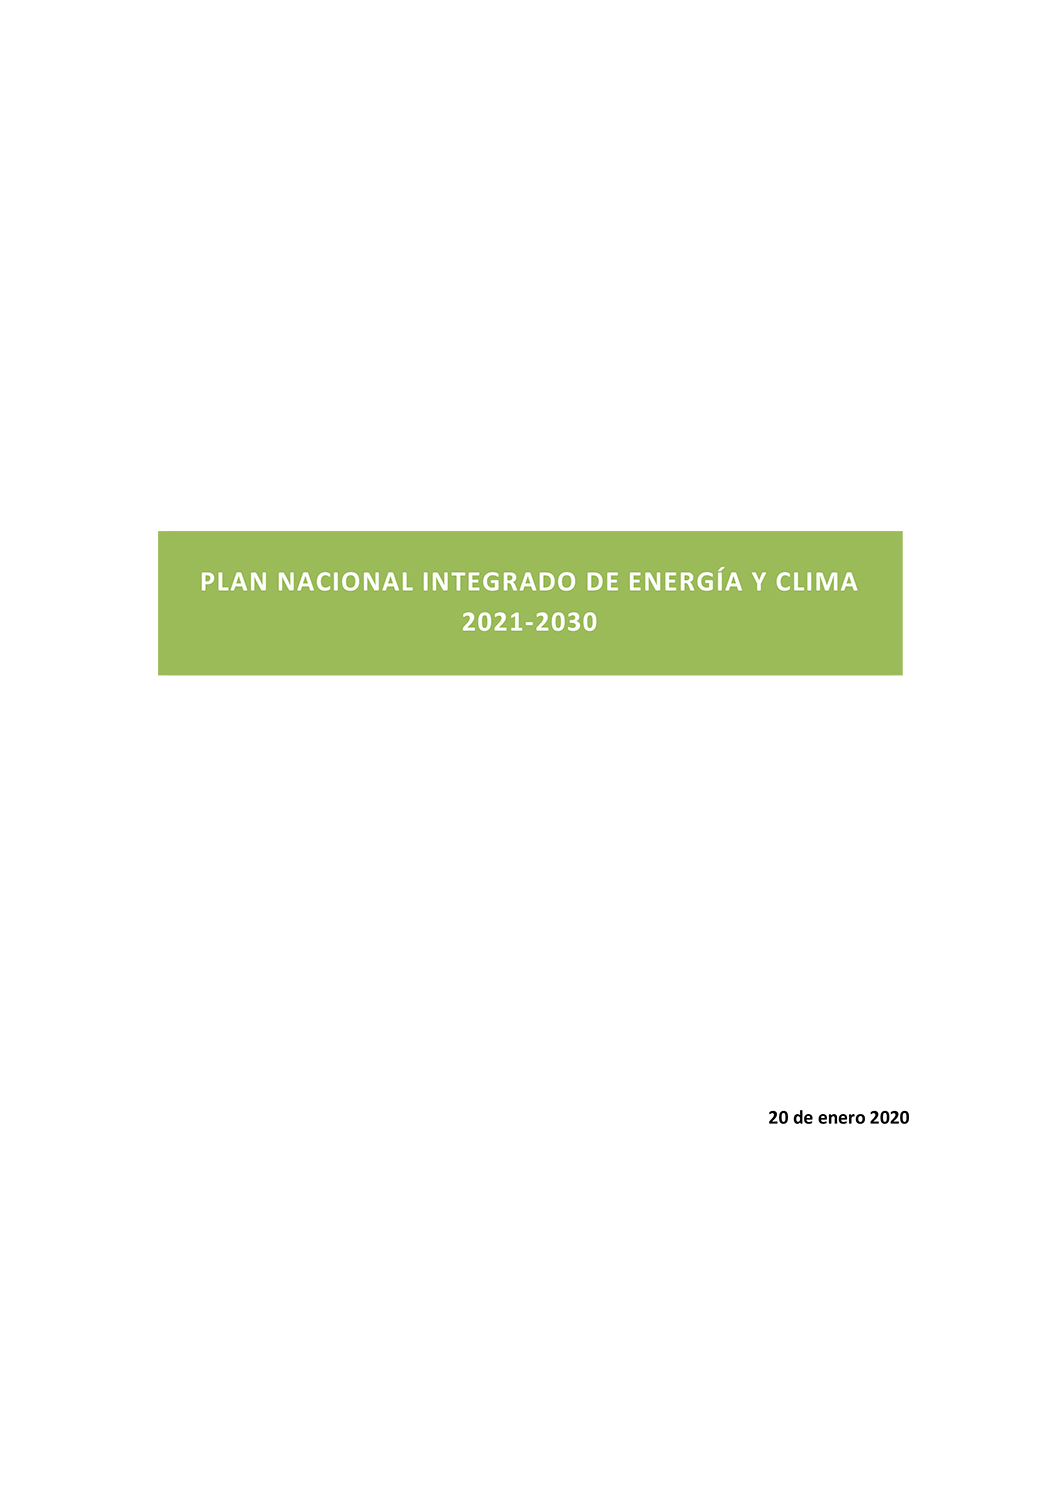 Plan Nacional Integrado de Energía y Clima 2021-2030